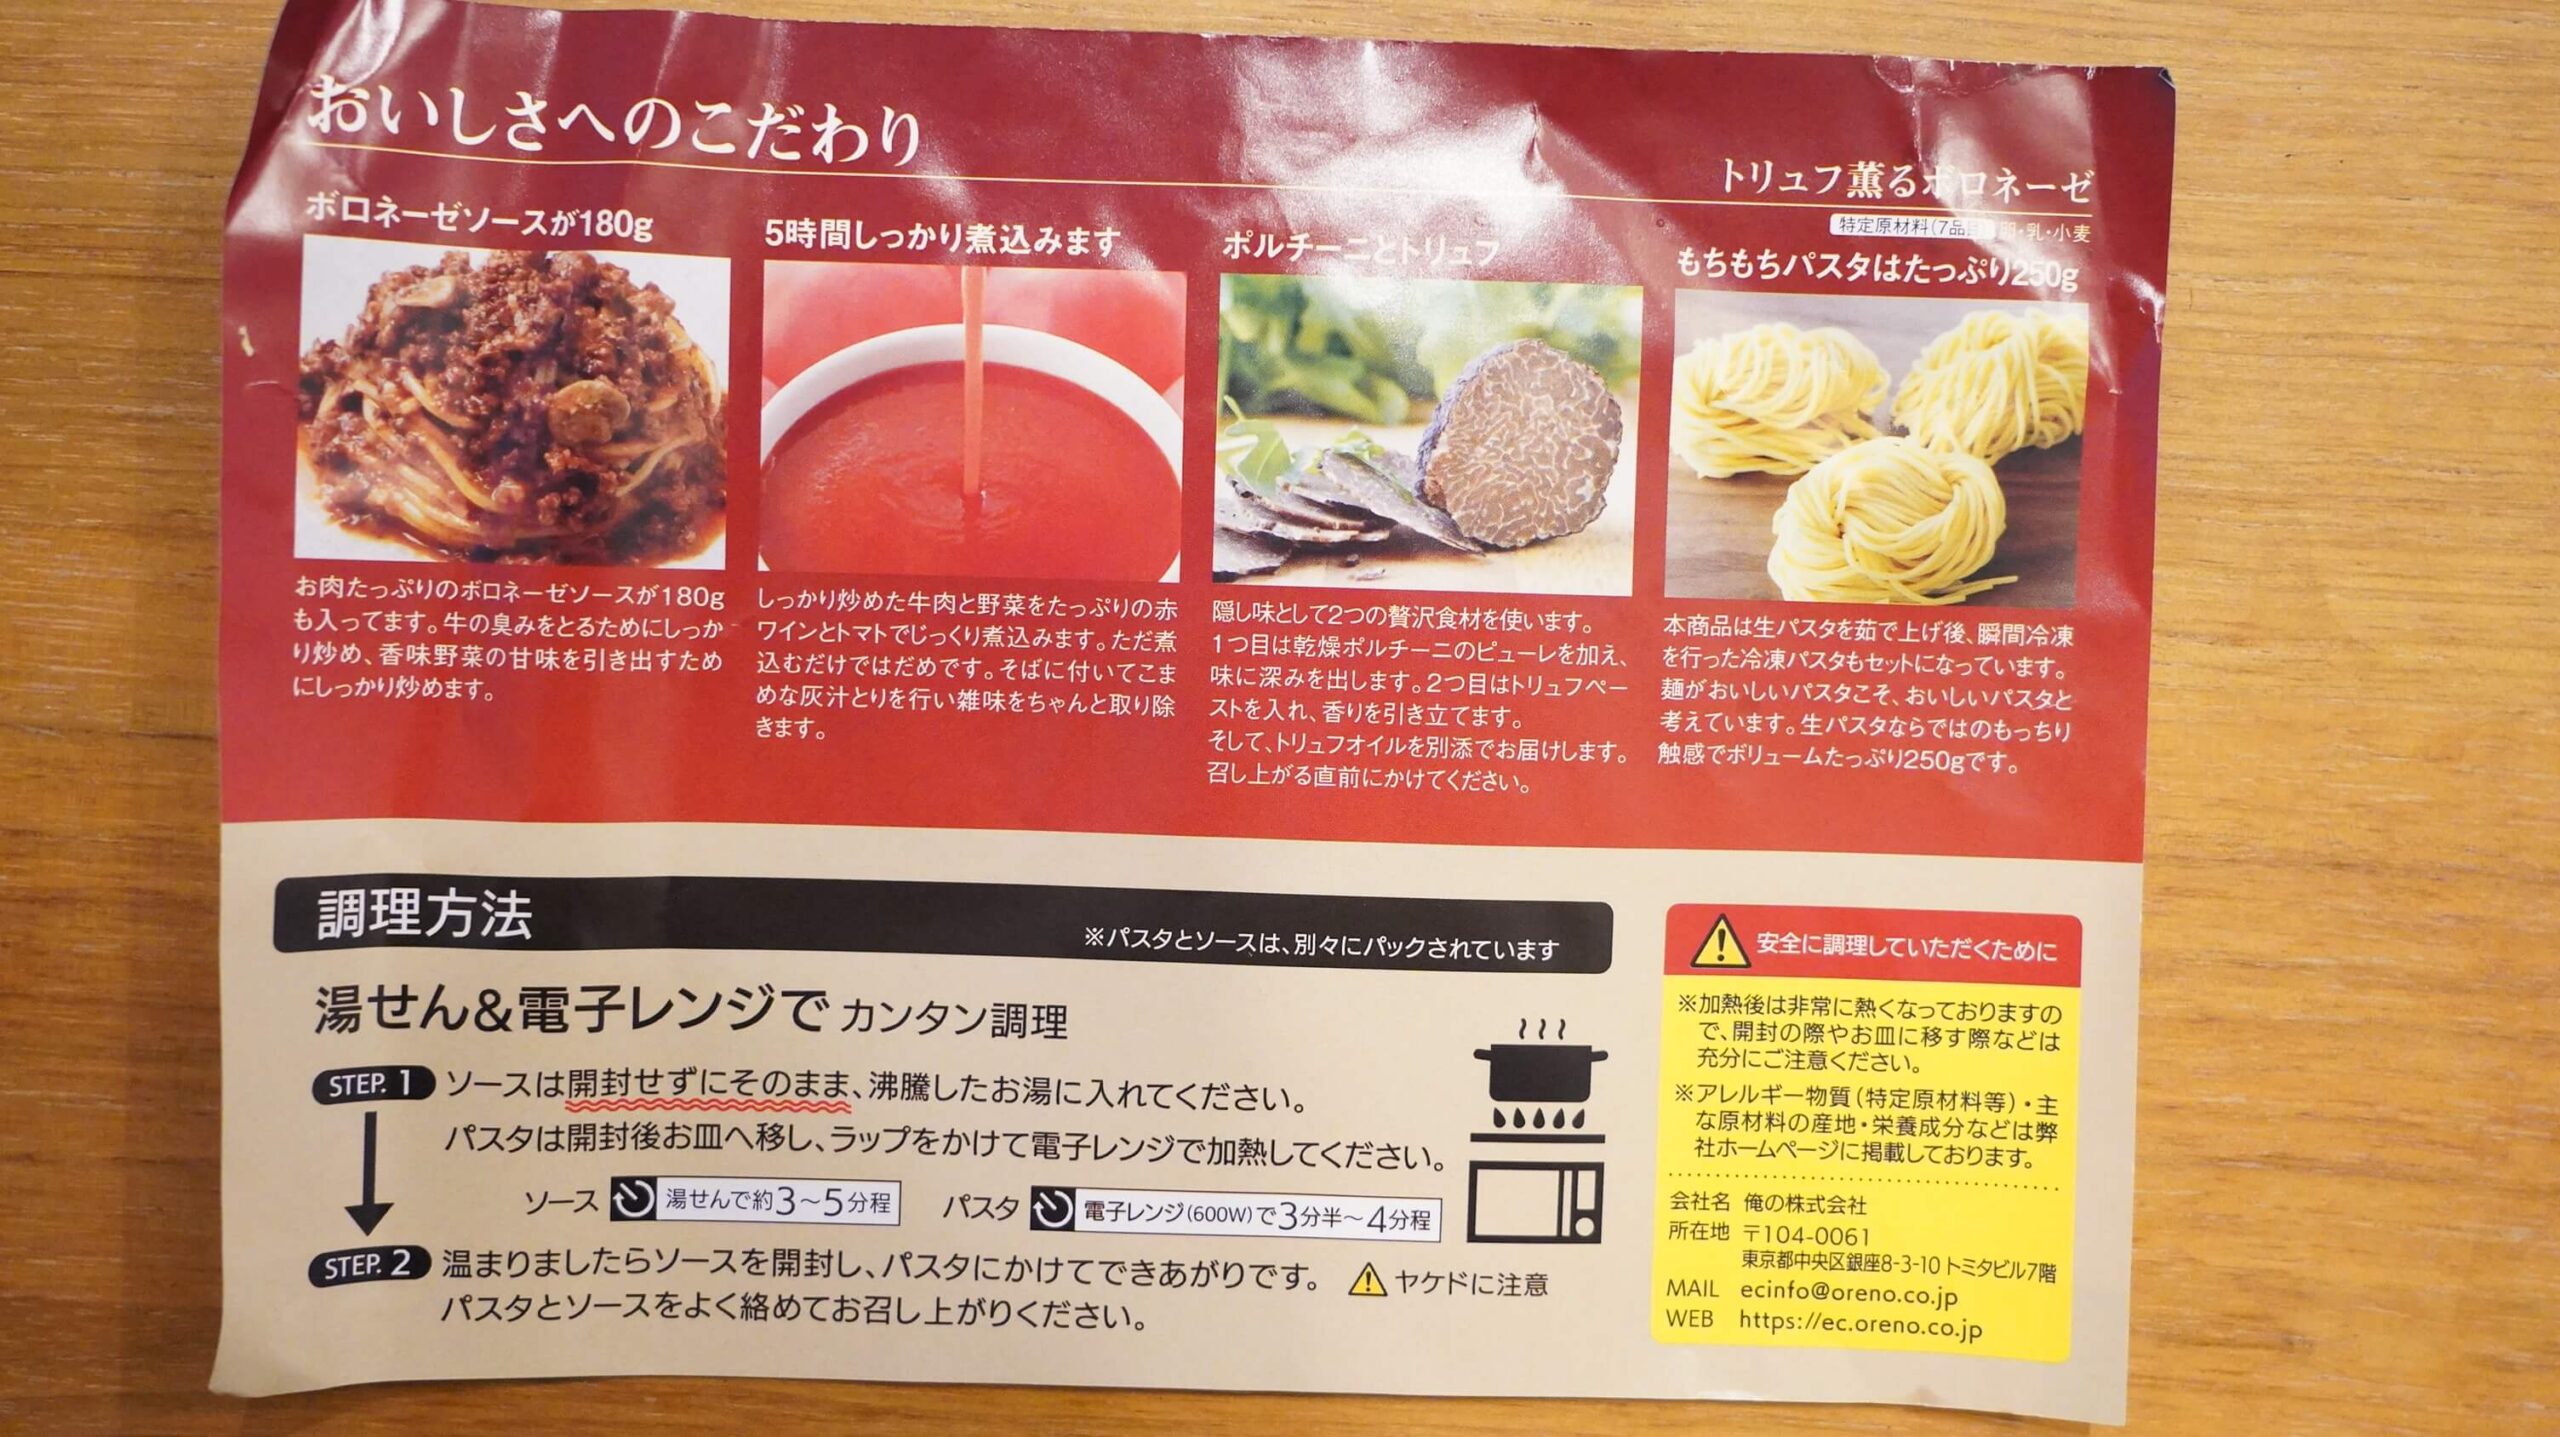 俺のイタリアンの冷凍食品「トリュフ薫るボロネーゼ」のパンフレット裏面の写真